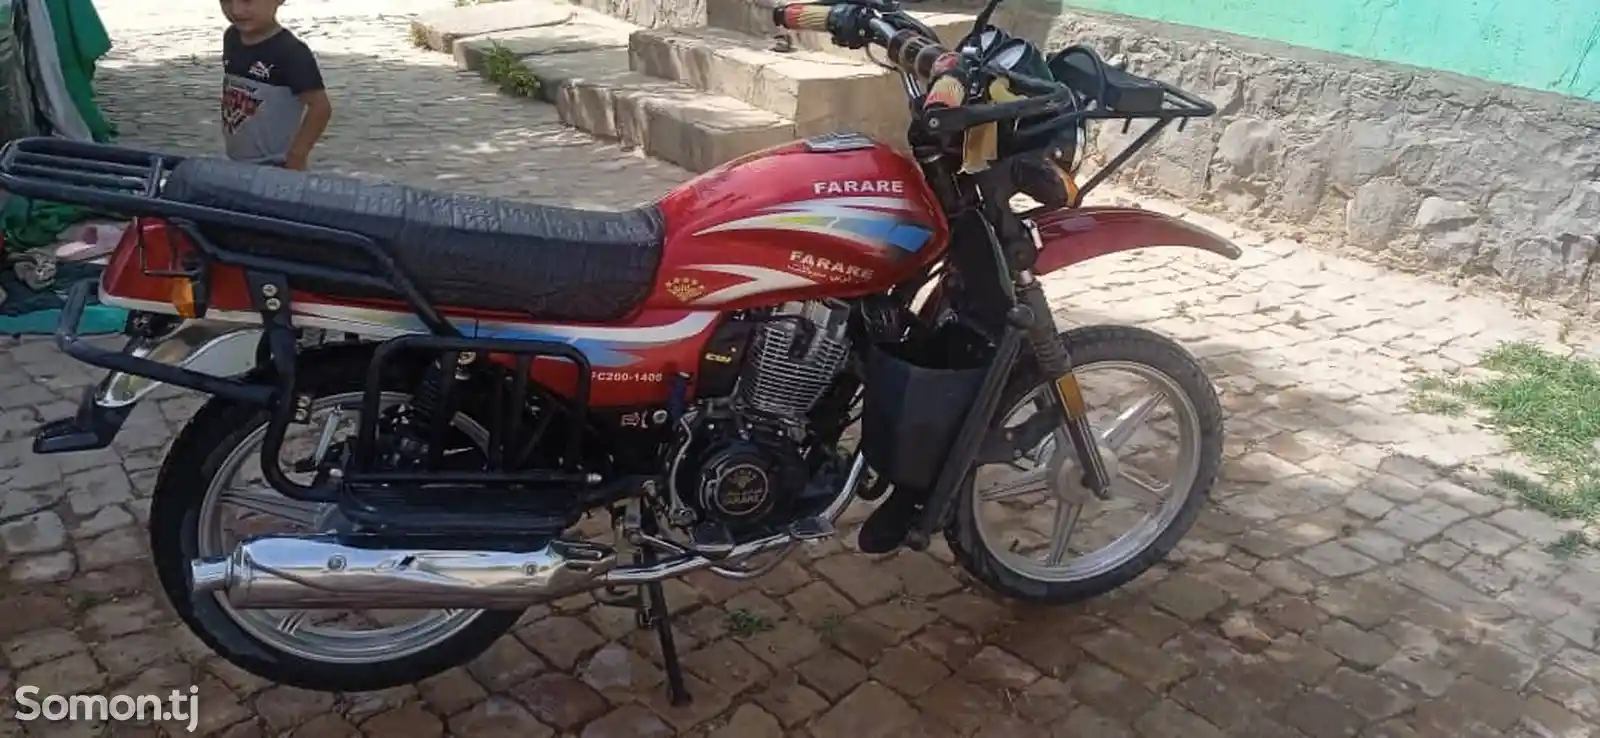 Мотоцикл Super Farare-2